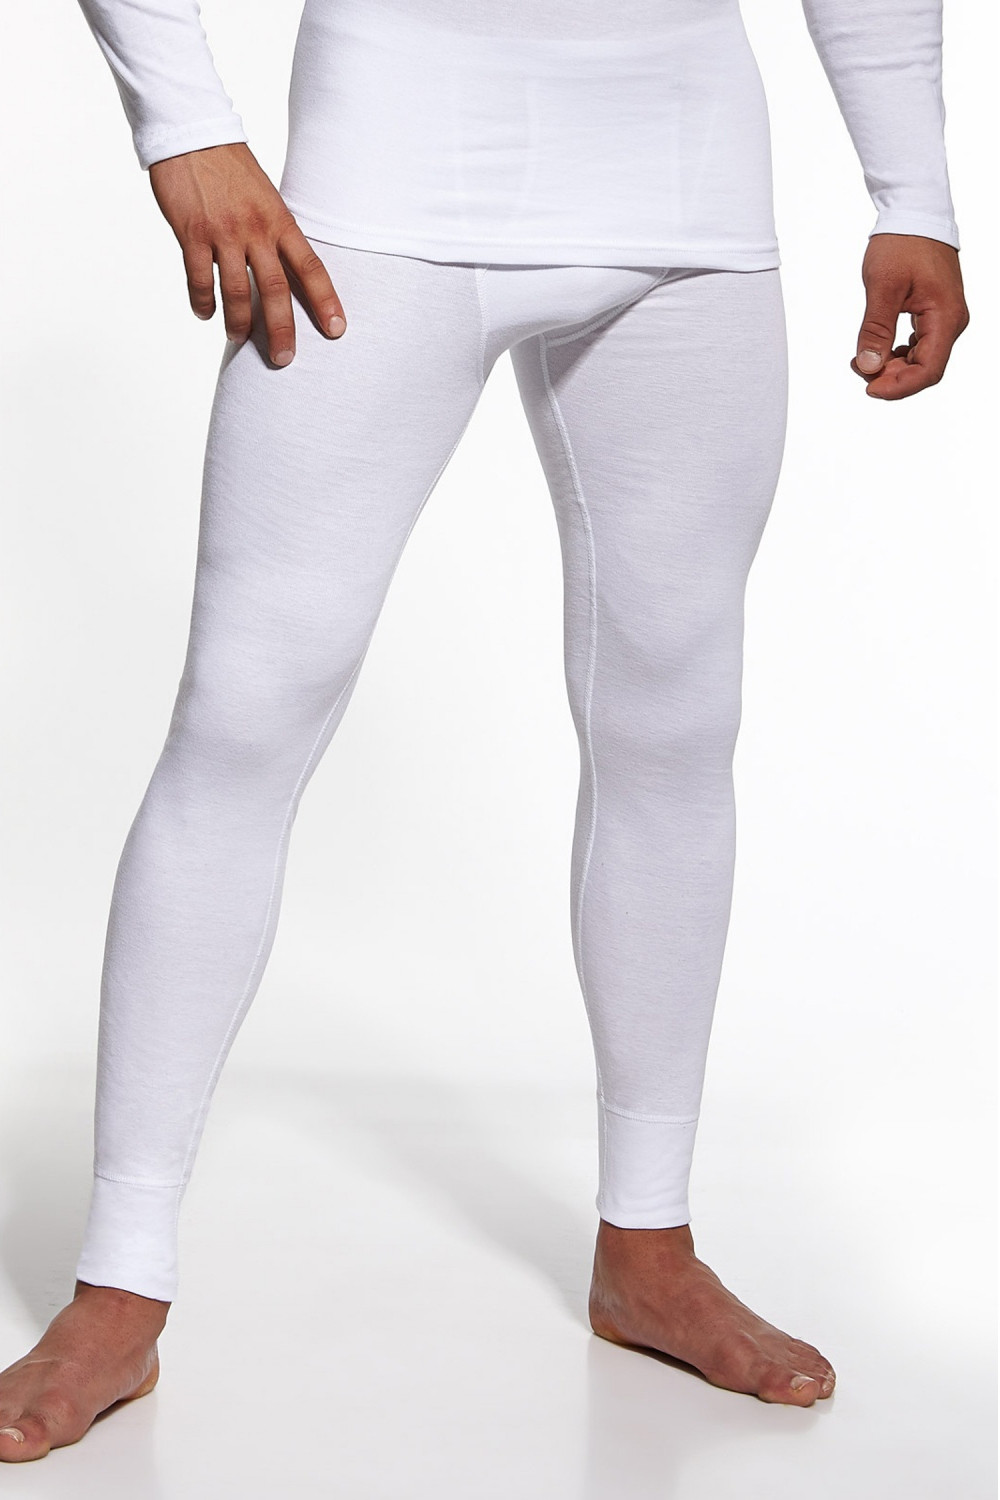 Pánské podvlékací kalhoty Authentic white - CORNETTE Bílá XL